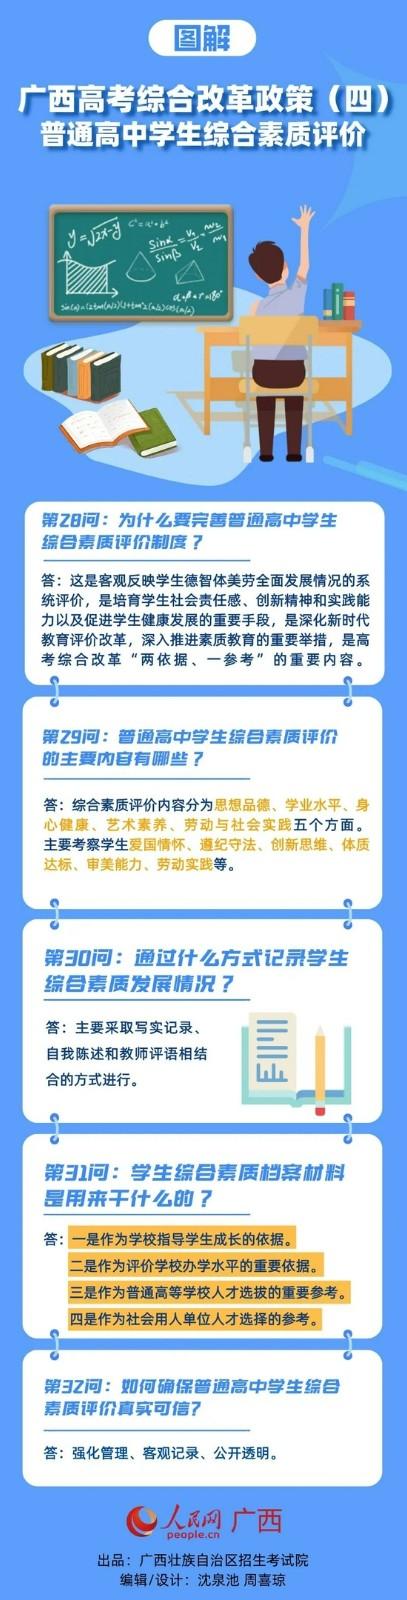 2021年广西高考综合改革政策图解